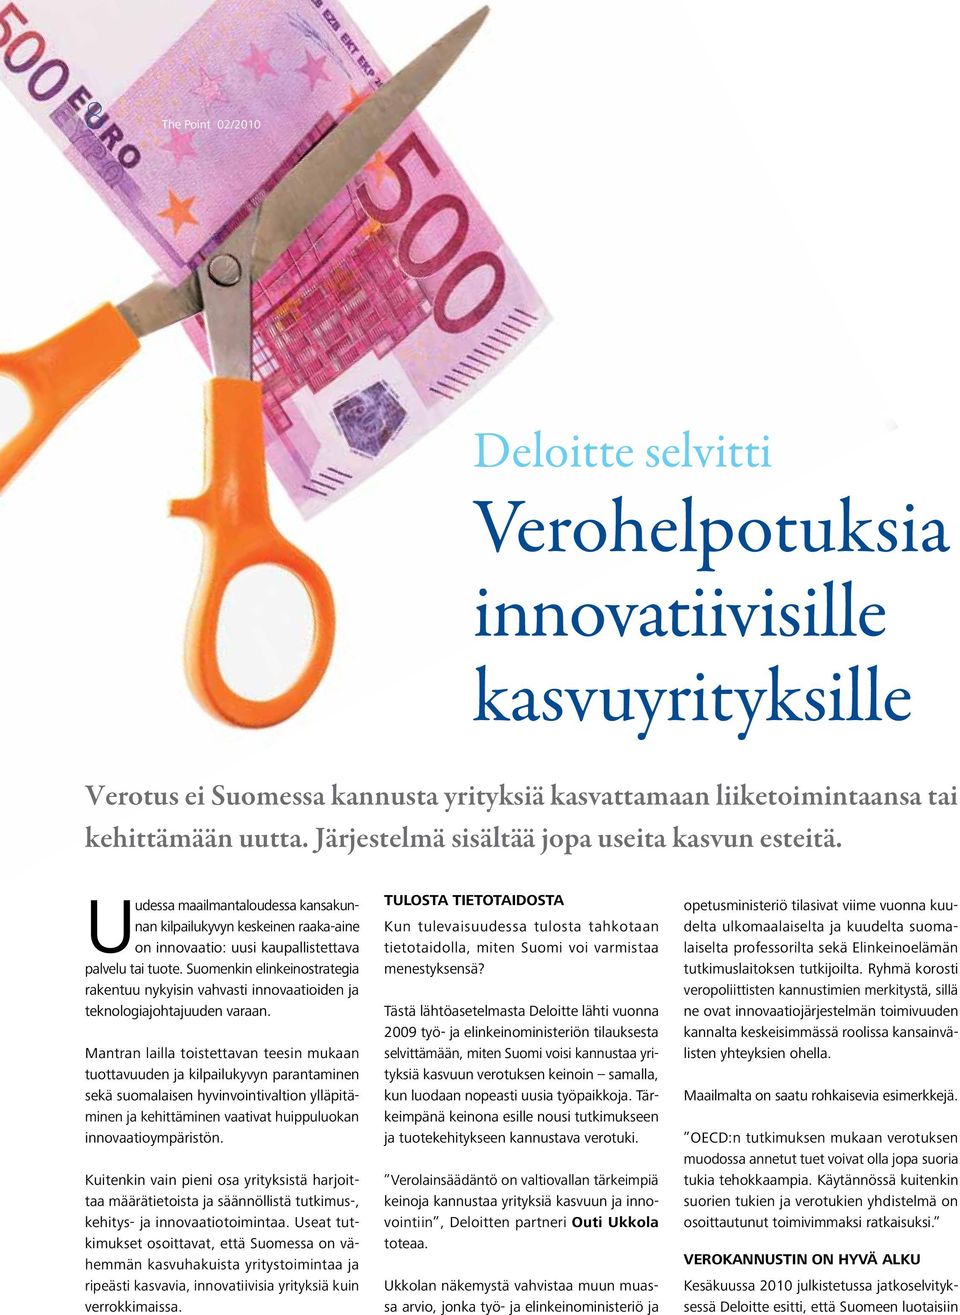 Suomenkin elinkeinostrategia rakentuu nykyisin vahvasti innovaatioiden ja teknologiajohtajuuden varaan.